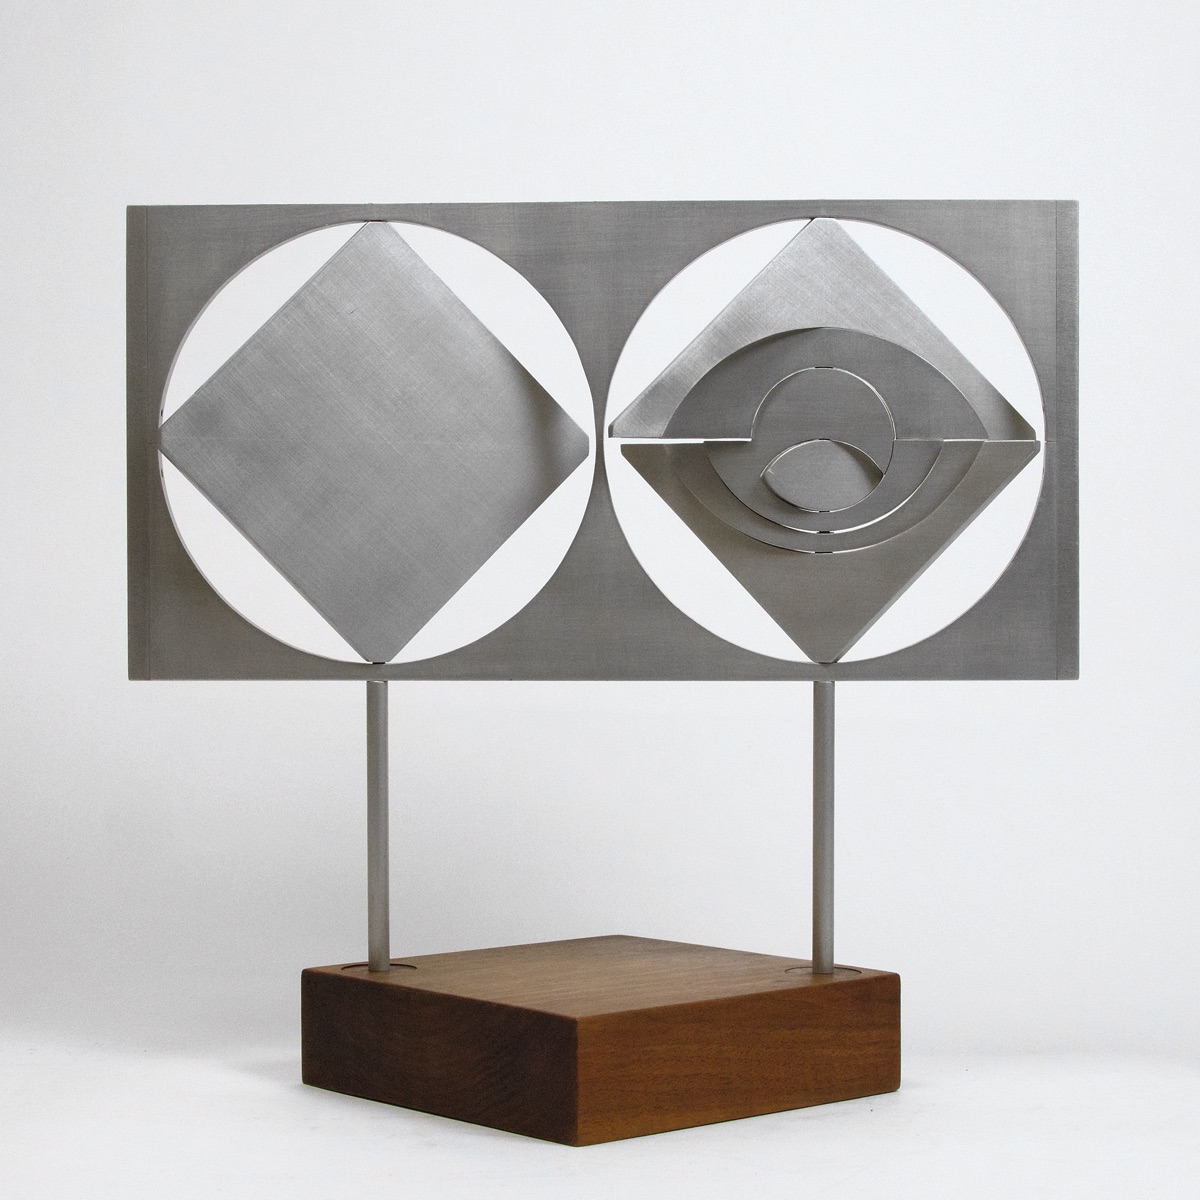 «Drehfigur mit 2 Quadraten und Kreis», 1966 (Aluminium, Sockel Nussbaum, 40,5 x 43,5 x 0,8 cm, WG 66 – 266 M)